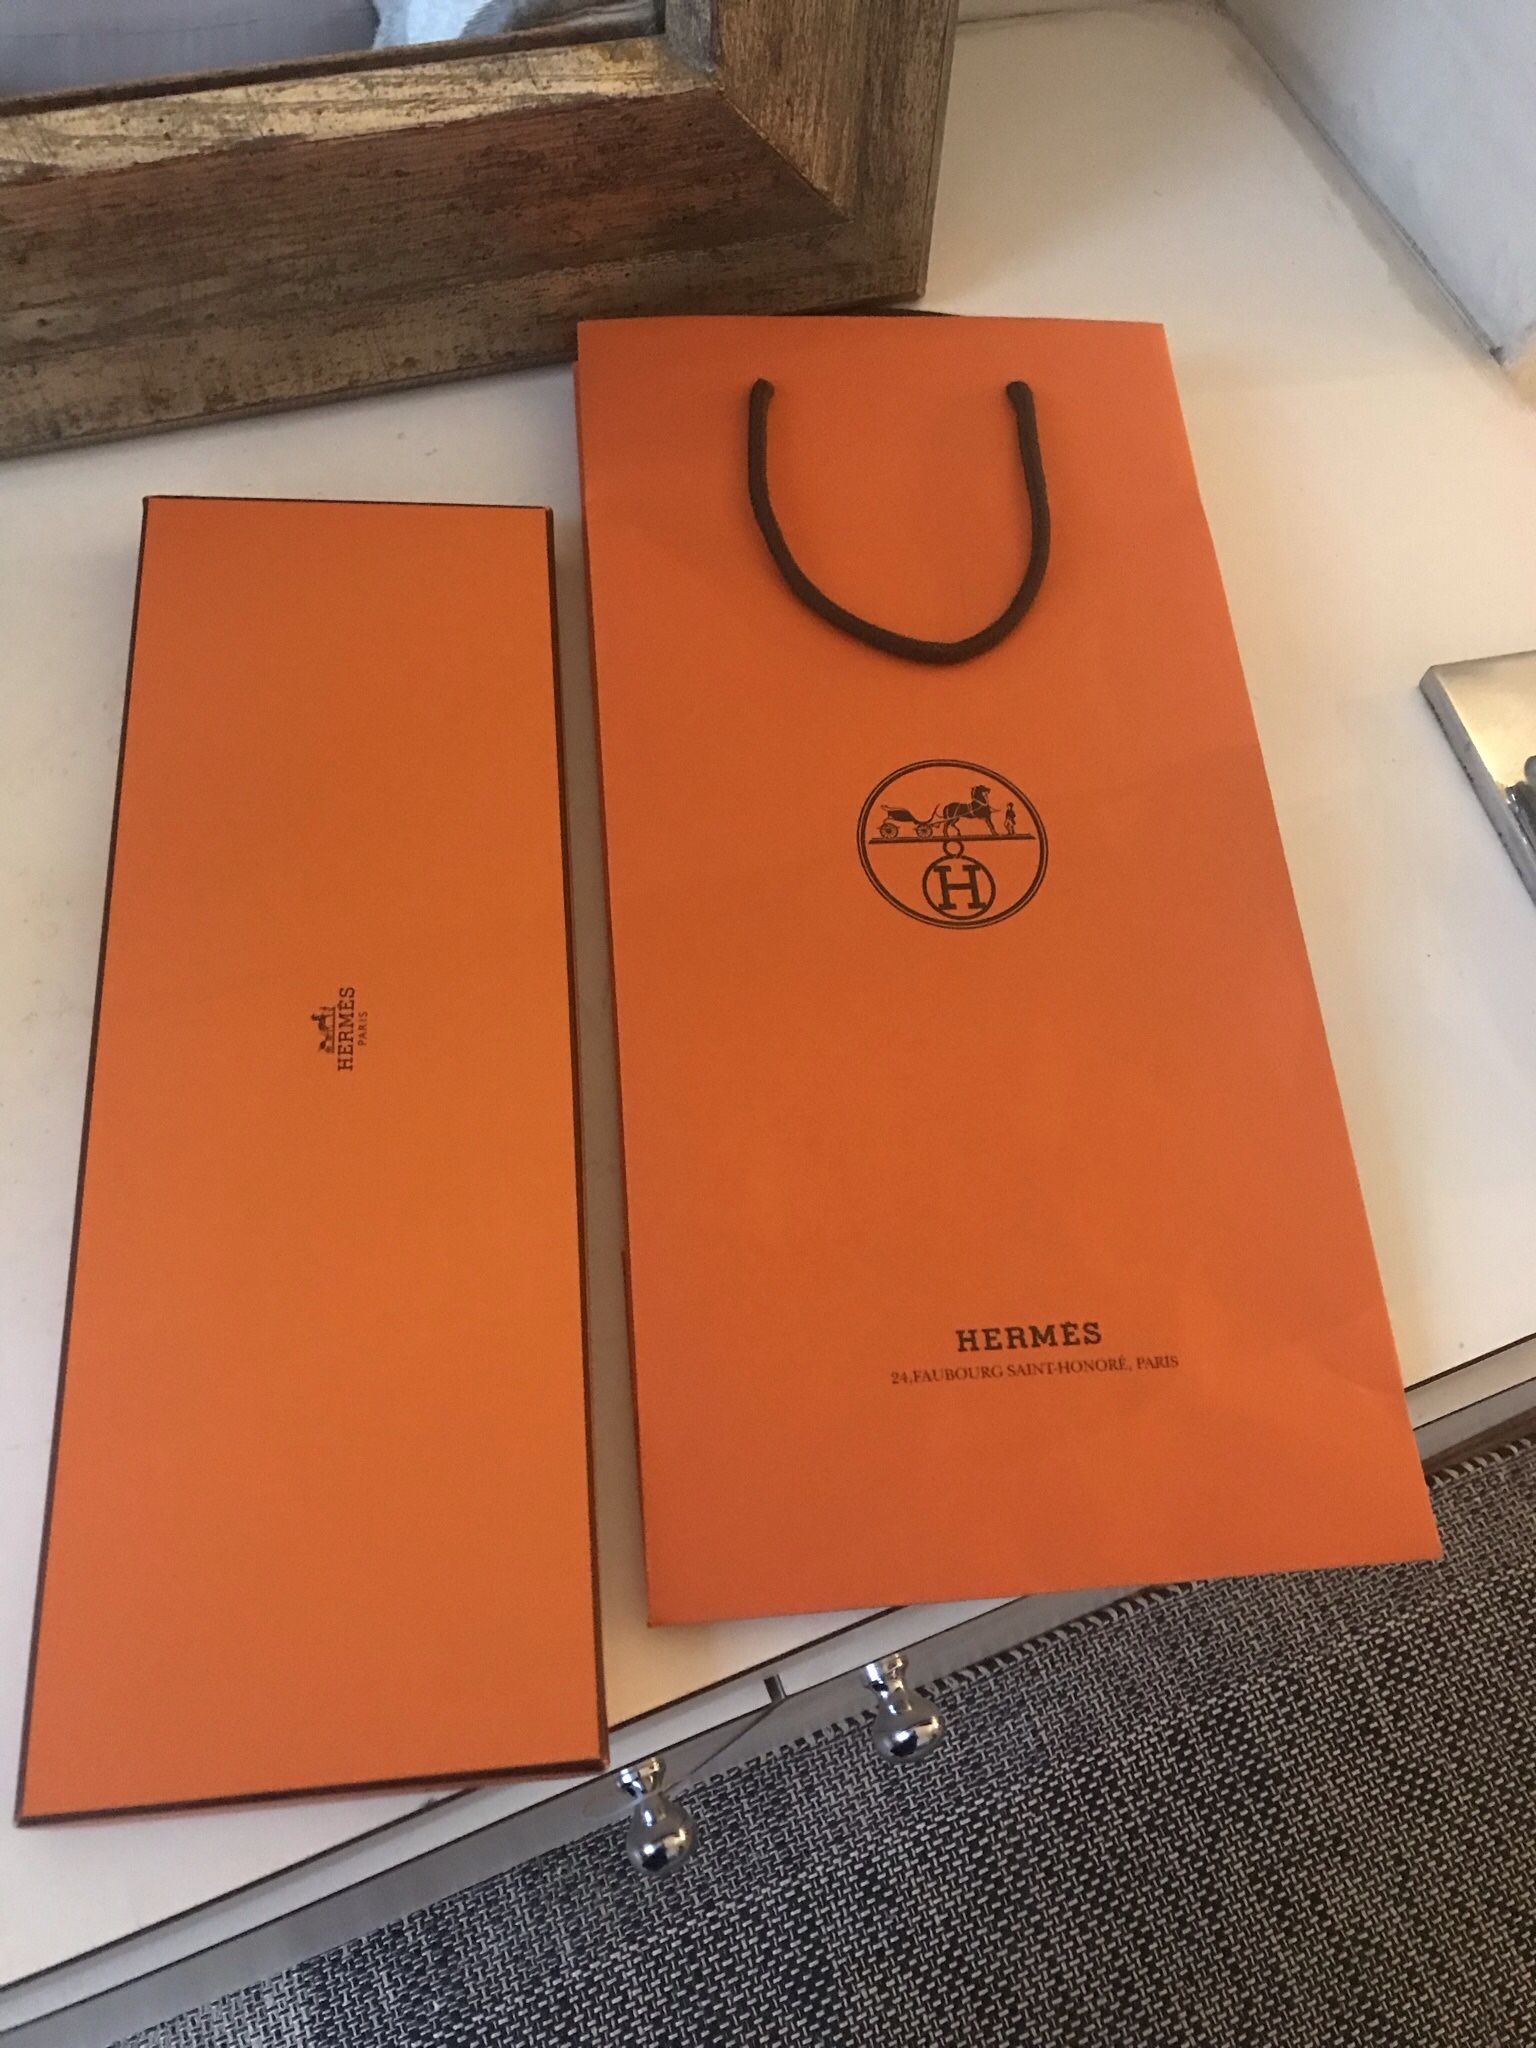 Hermès Tie Box And Shopping Bag Empty Box